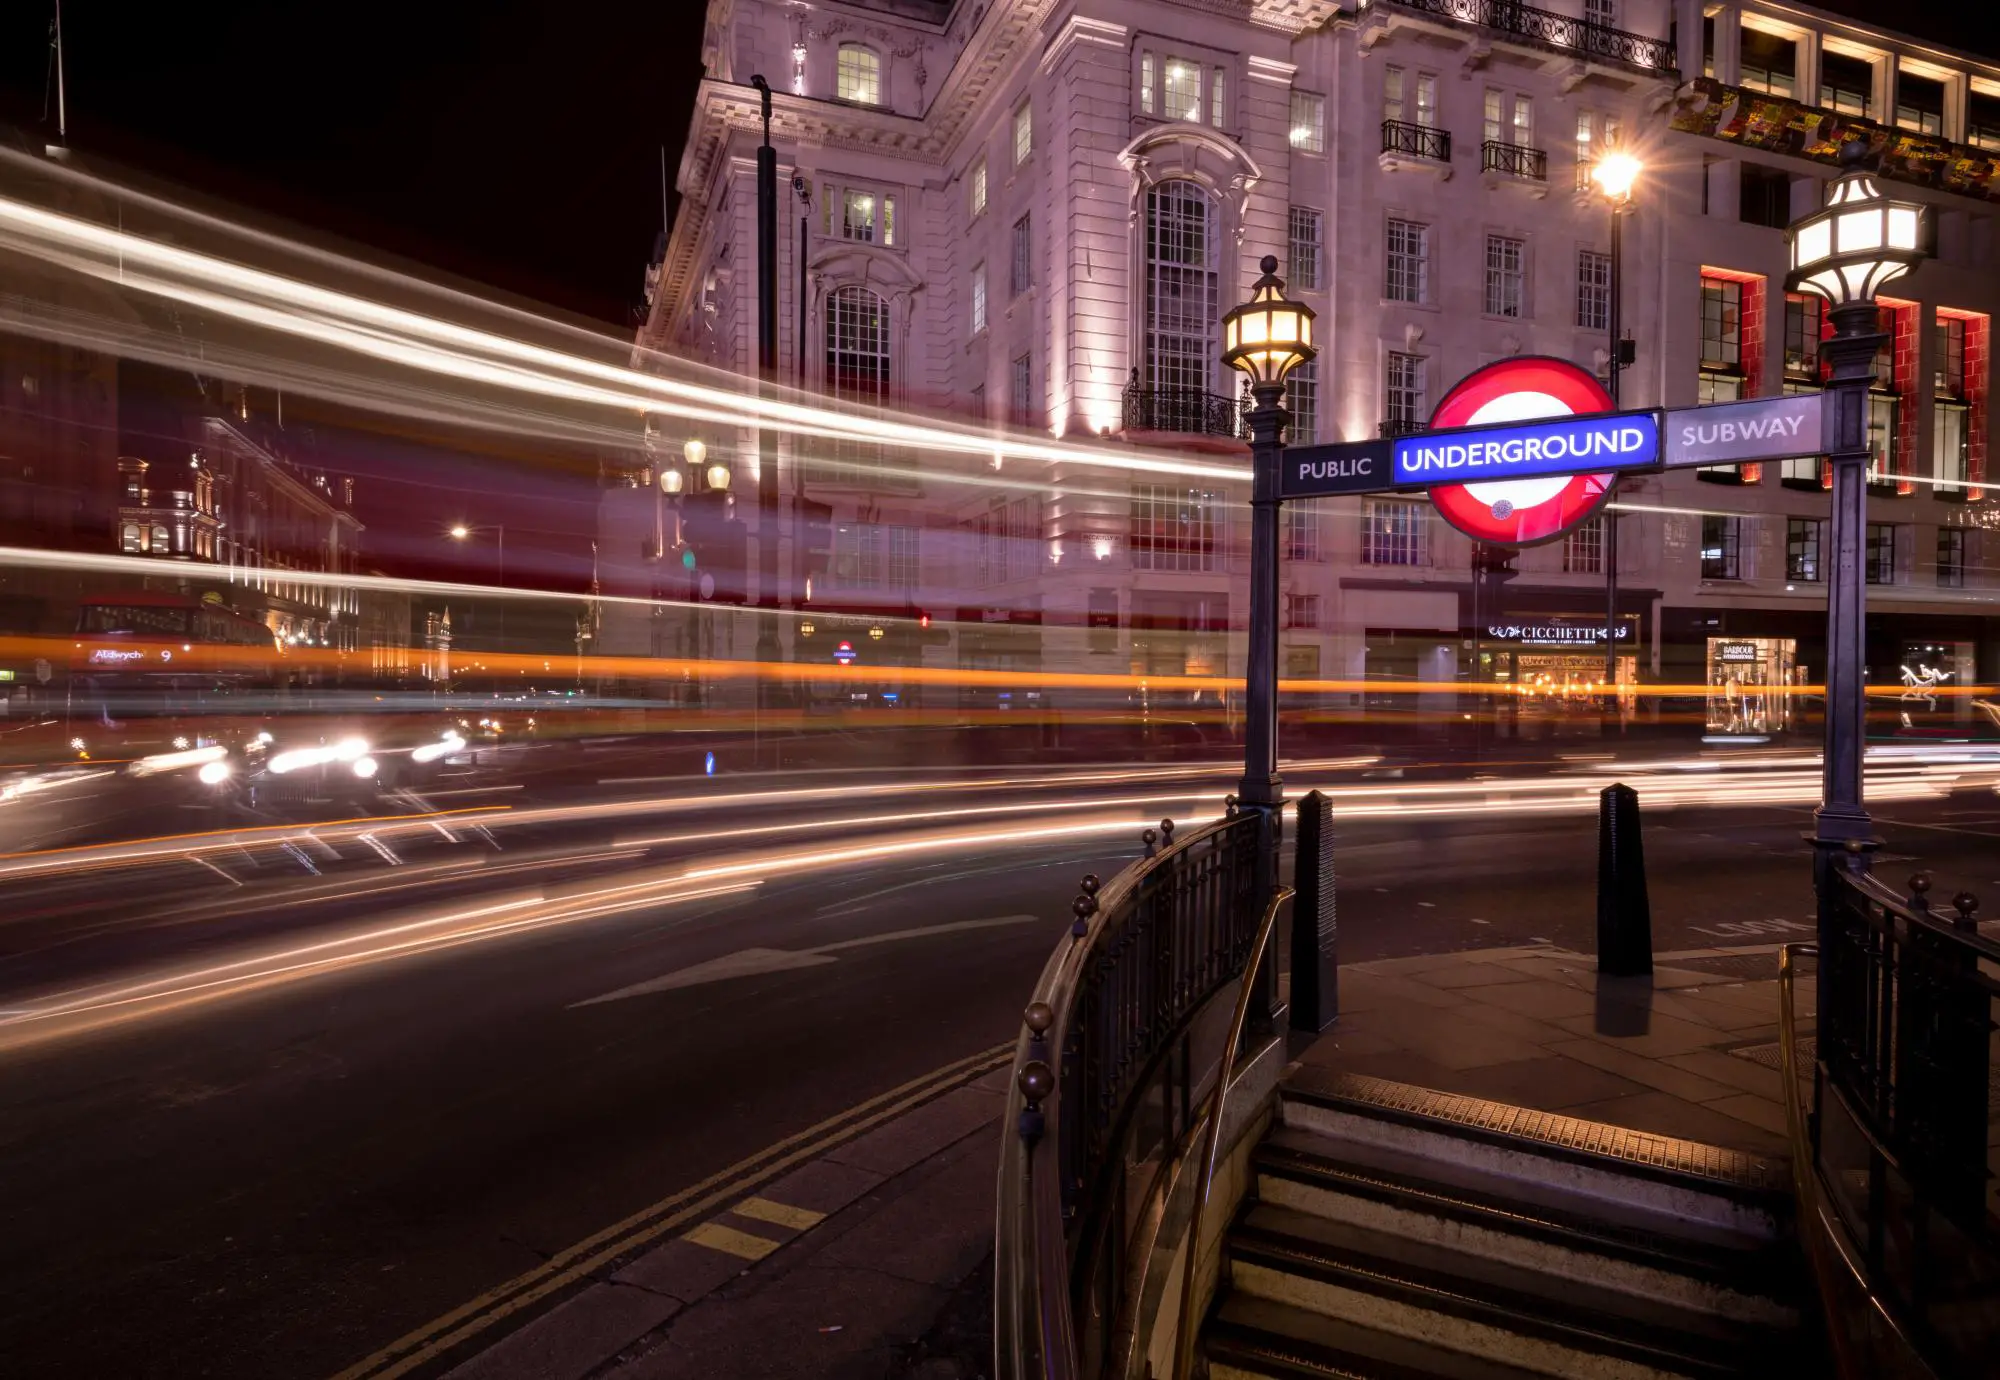 ¿Cuánto cuesta un taxi en Londres? Una guía detallada